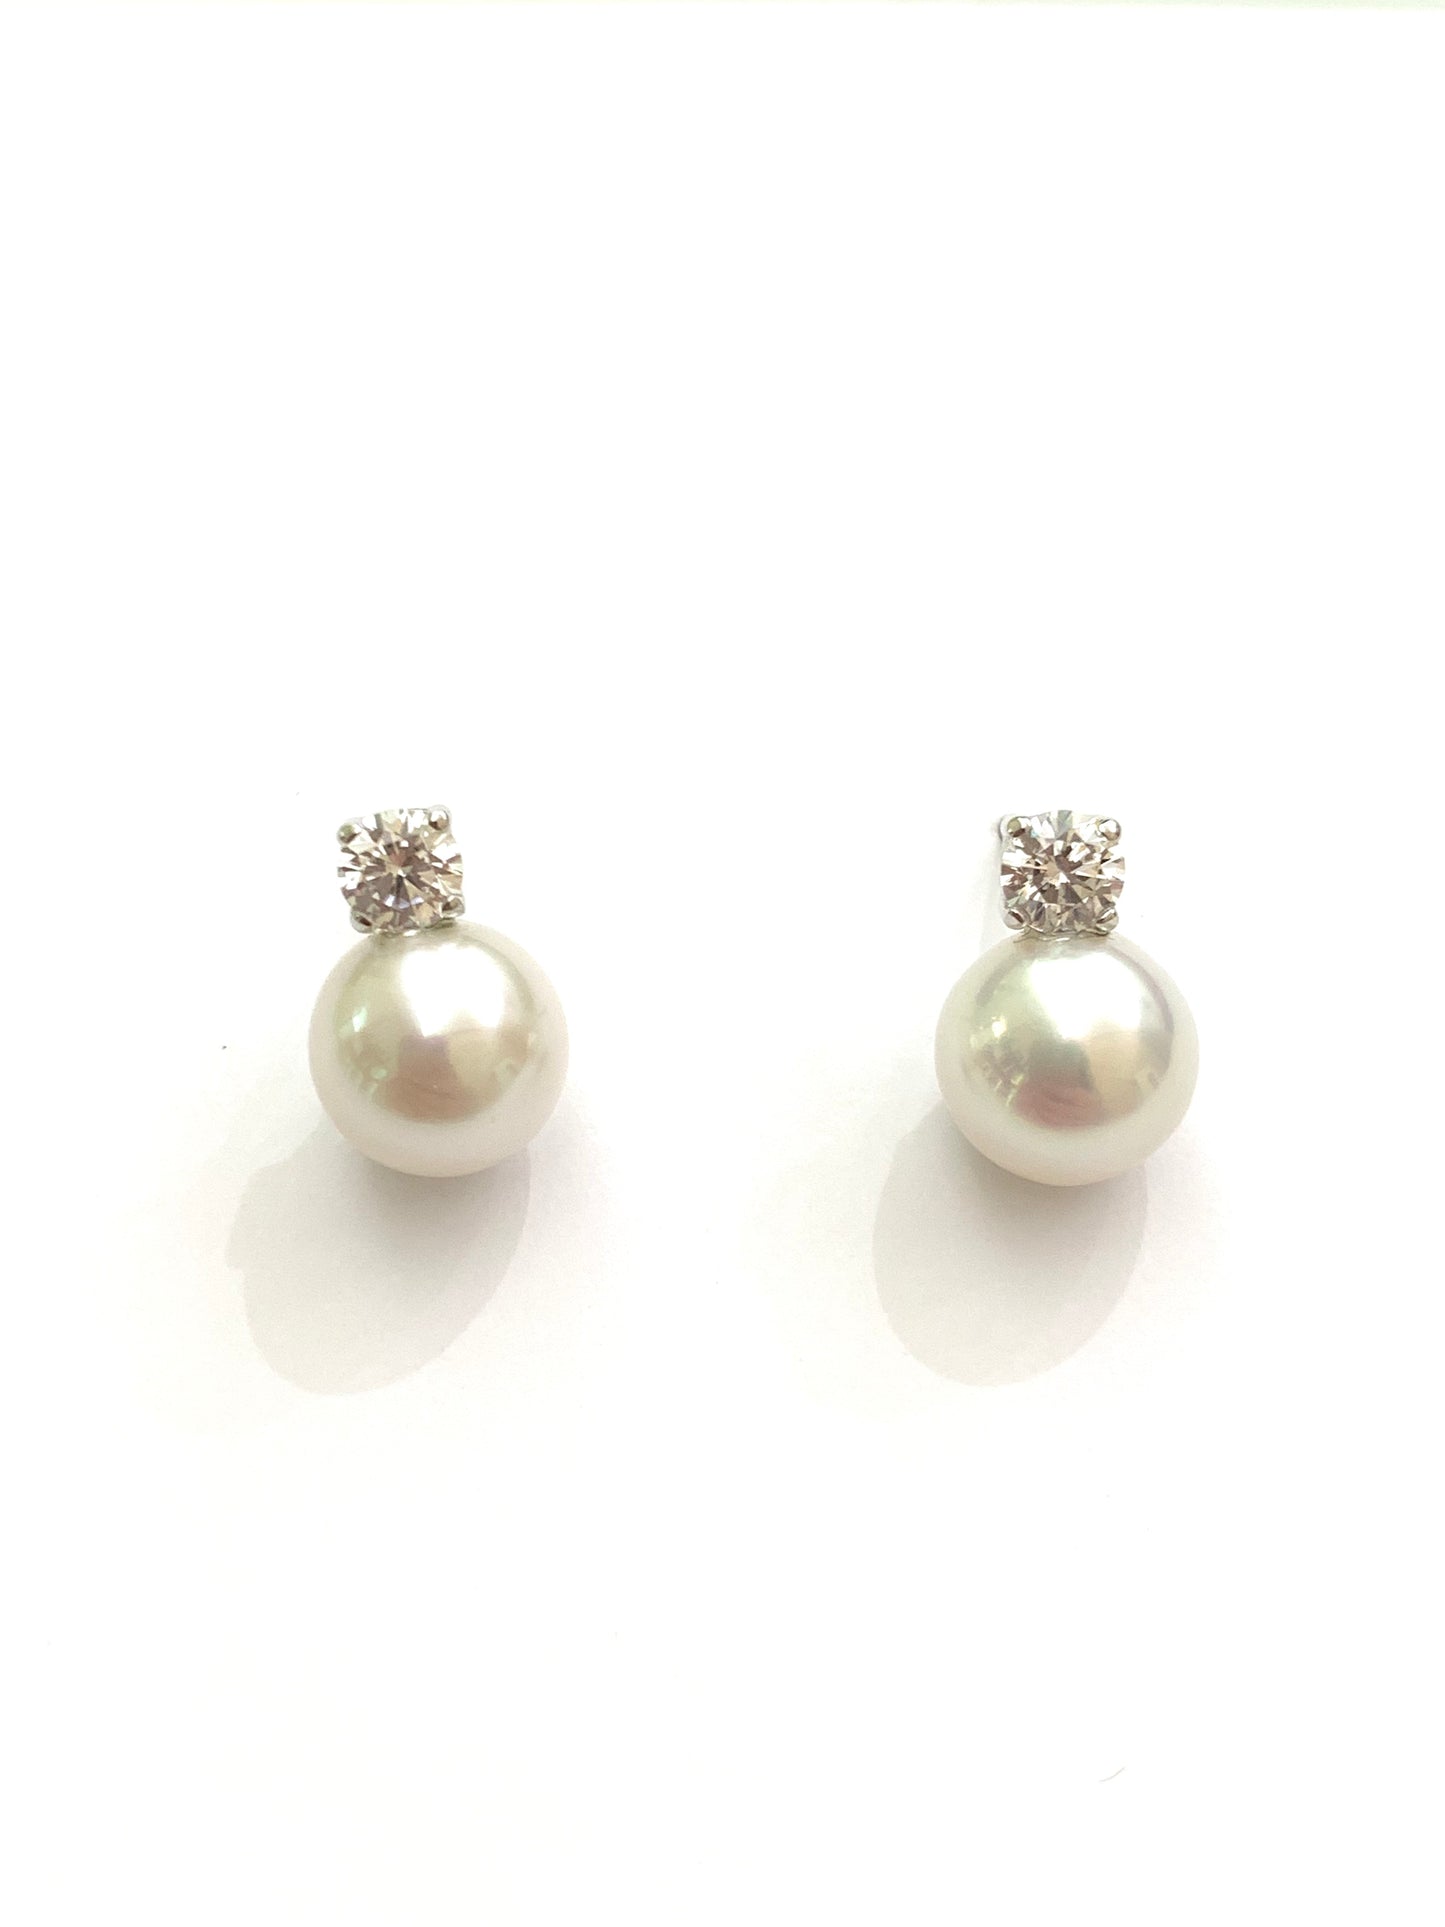 Orecchini in oro bianco 18kt con perle coltivate impreziosite da uno zircone.  Dimensione perla 0,7 cm.  Dimensione zircone 0,3 cm.  Chiusura con farfalline.